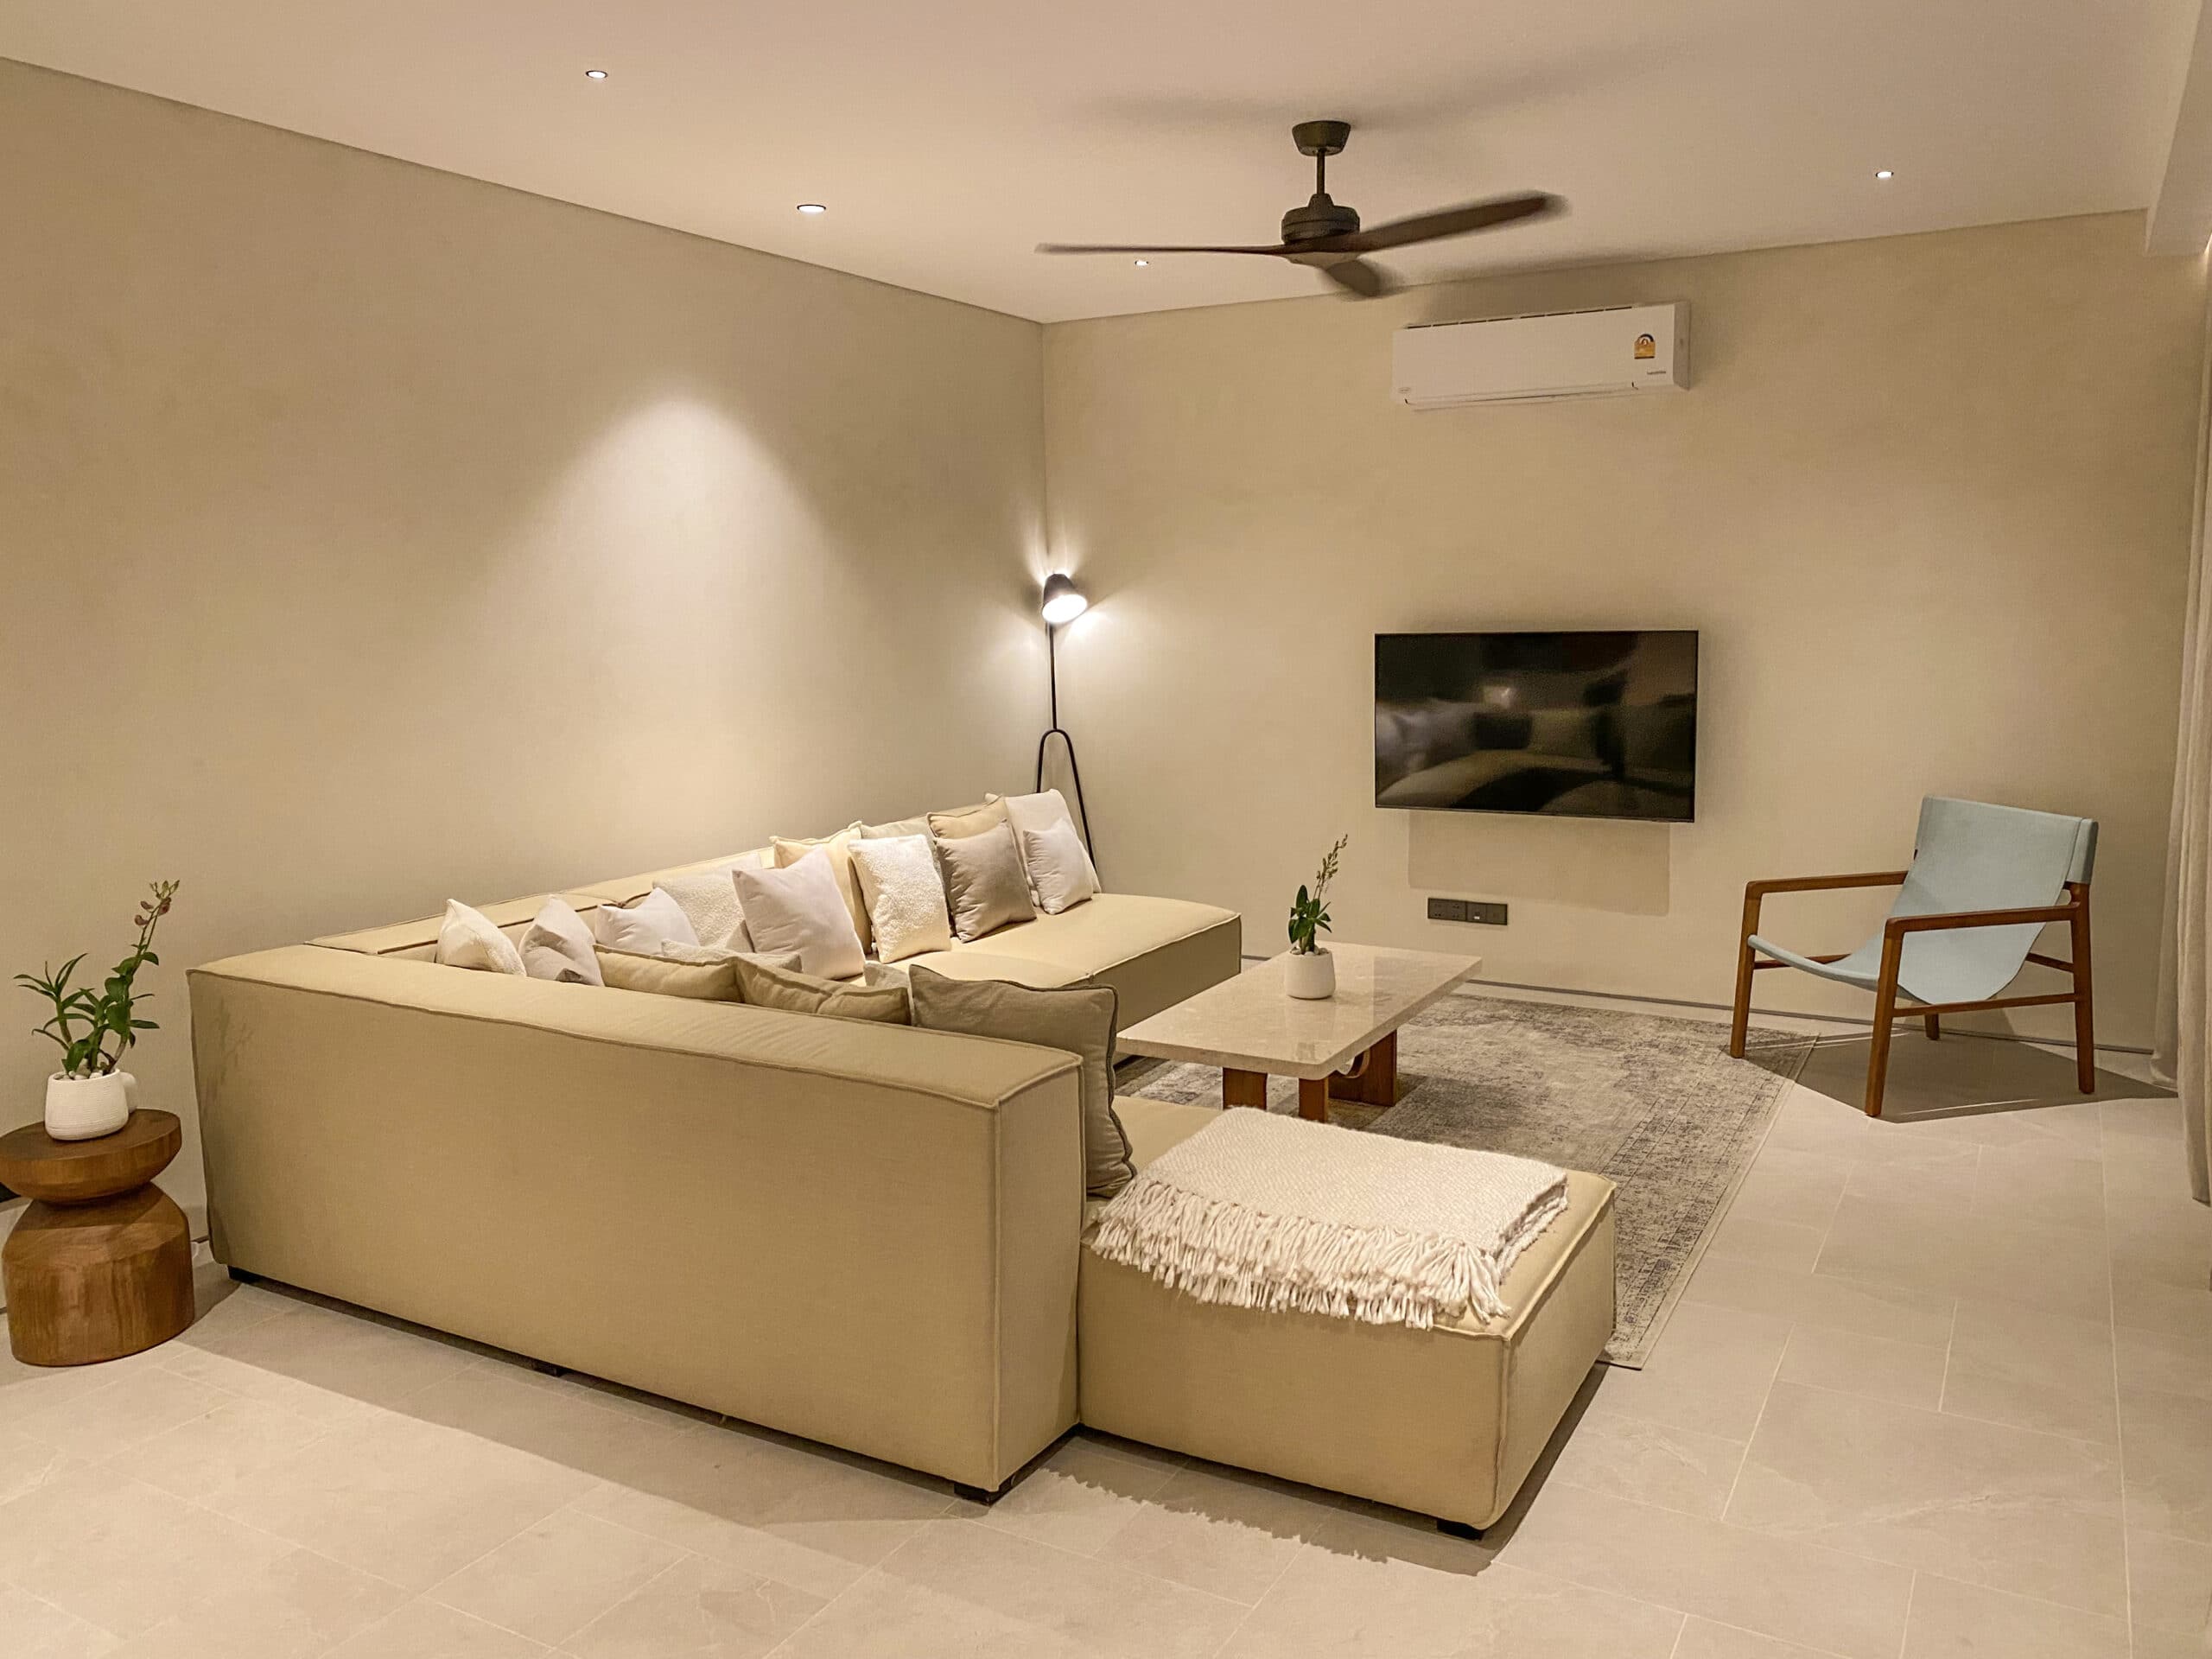 Design Assembly - Surin Villa Phuket - Bali Architect - Interior Design - Villa - Living Room